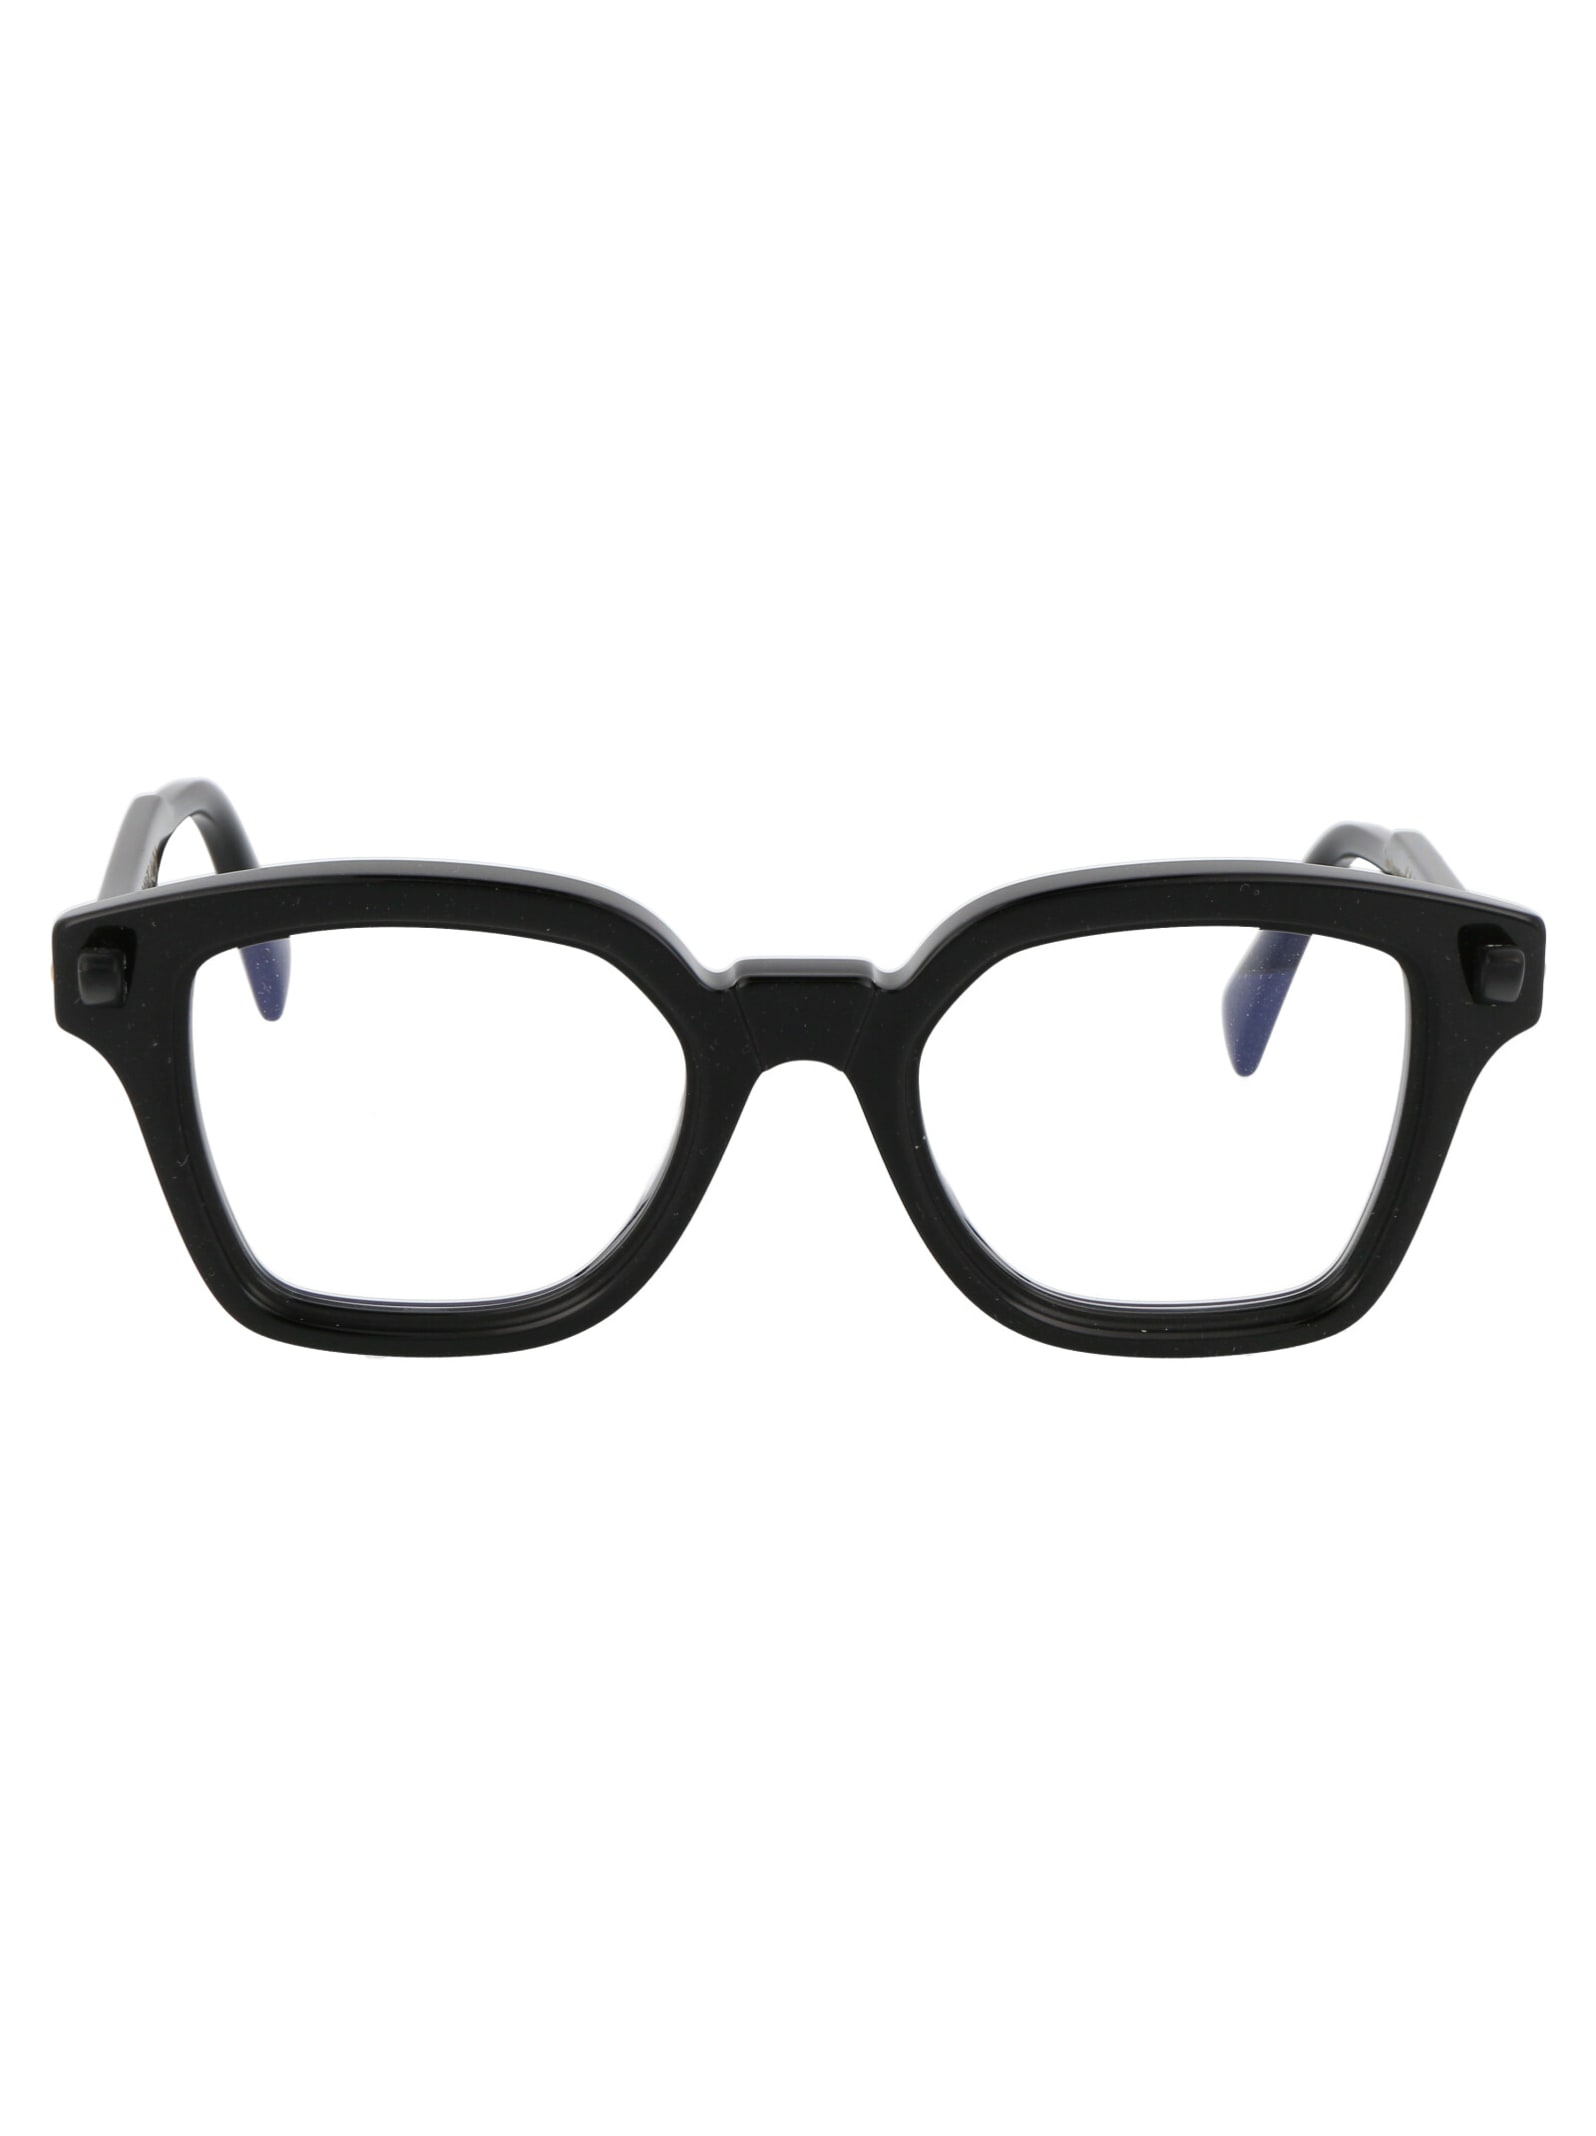 Maske Q3 Glasses